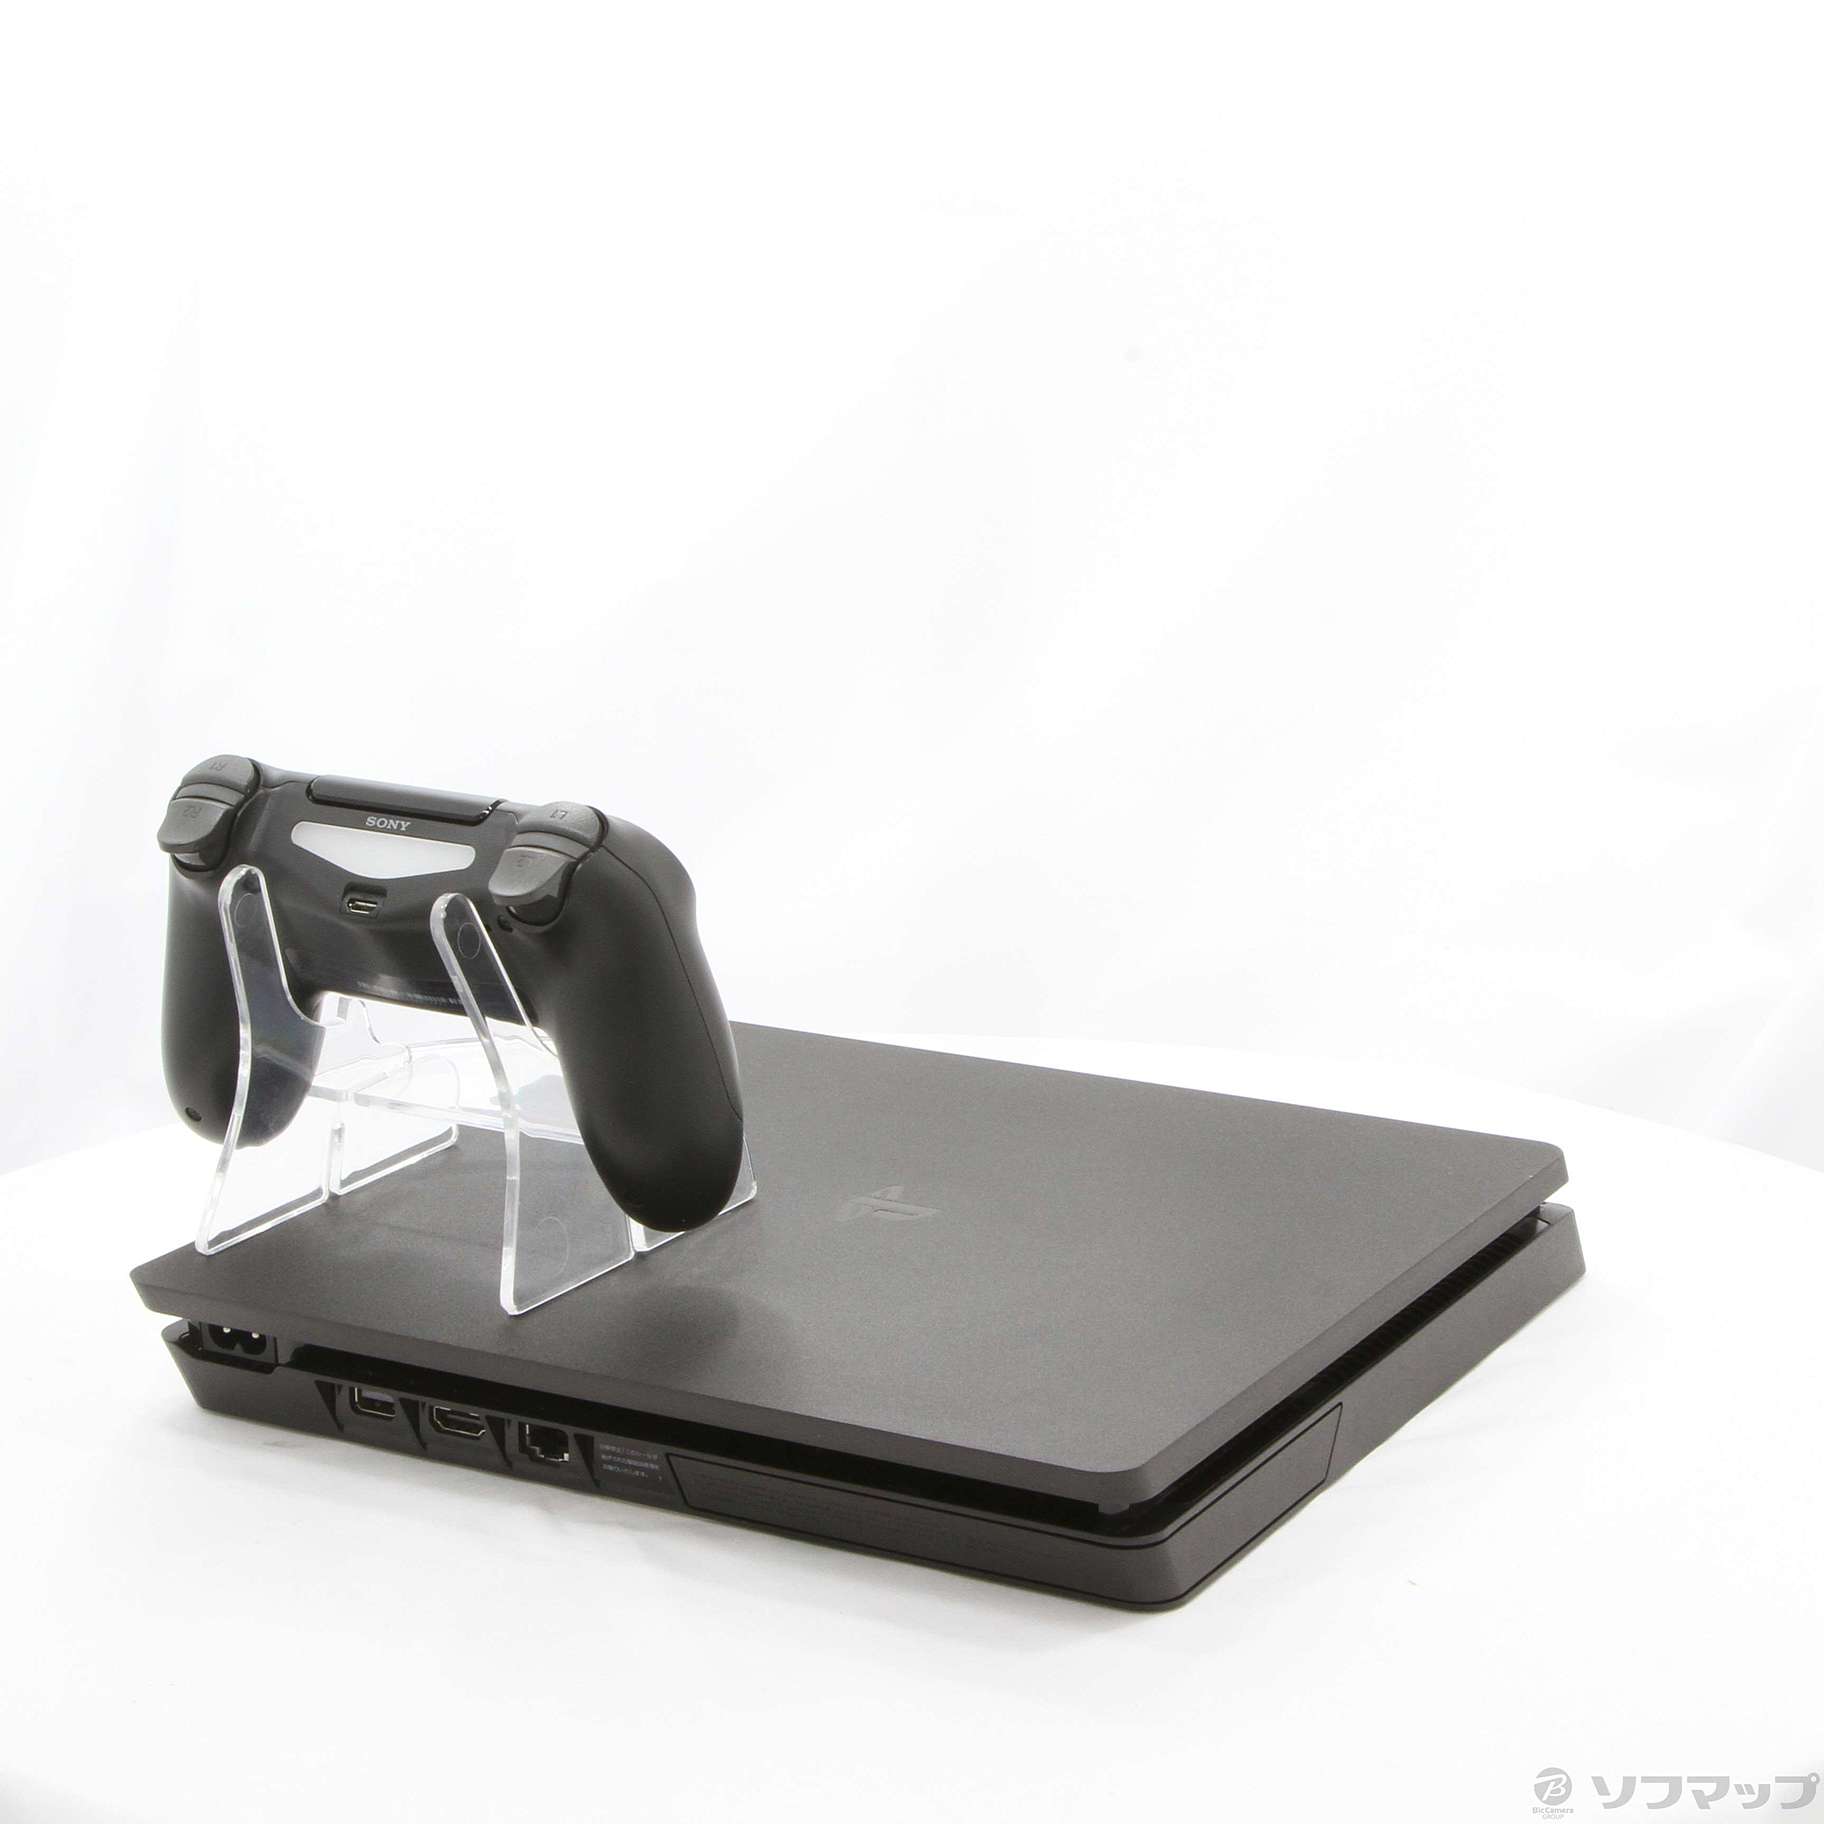 【中古】PlayStation 4 ジェット・ブラック 500GB CUH-2200AB01 02/28(月)値下げ